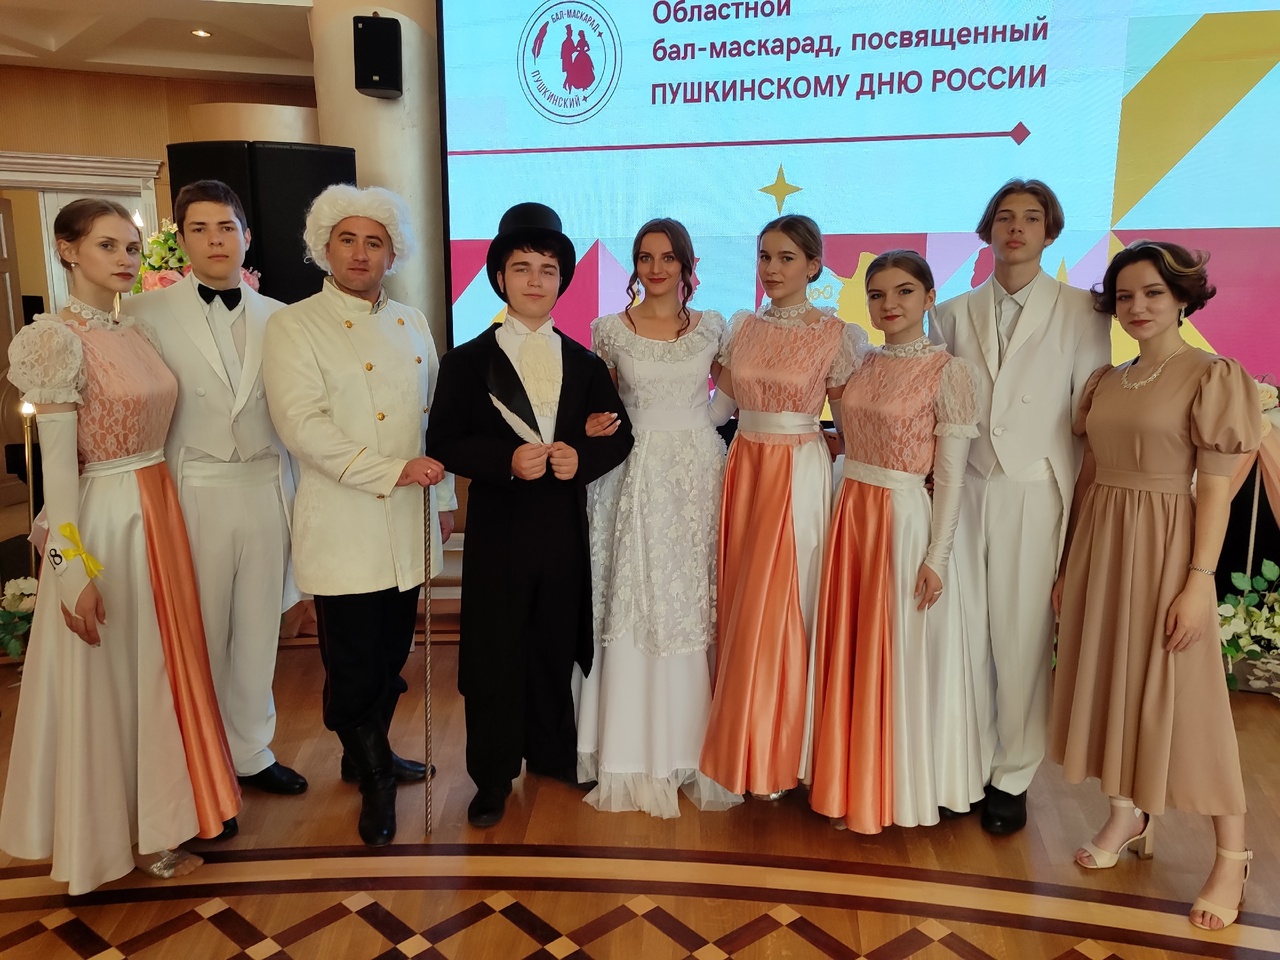 Творческая группа Ракитянского района приняла участие в оформлении и проведении областного Пушкинского бала-маскарада.